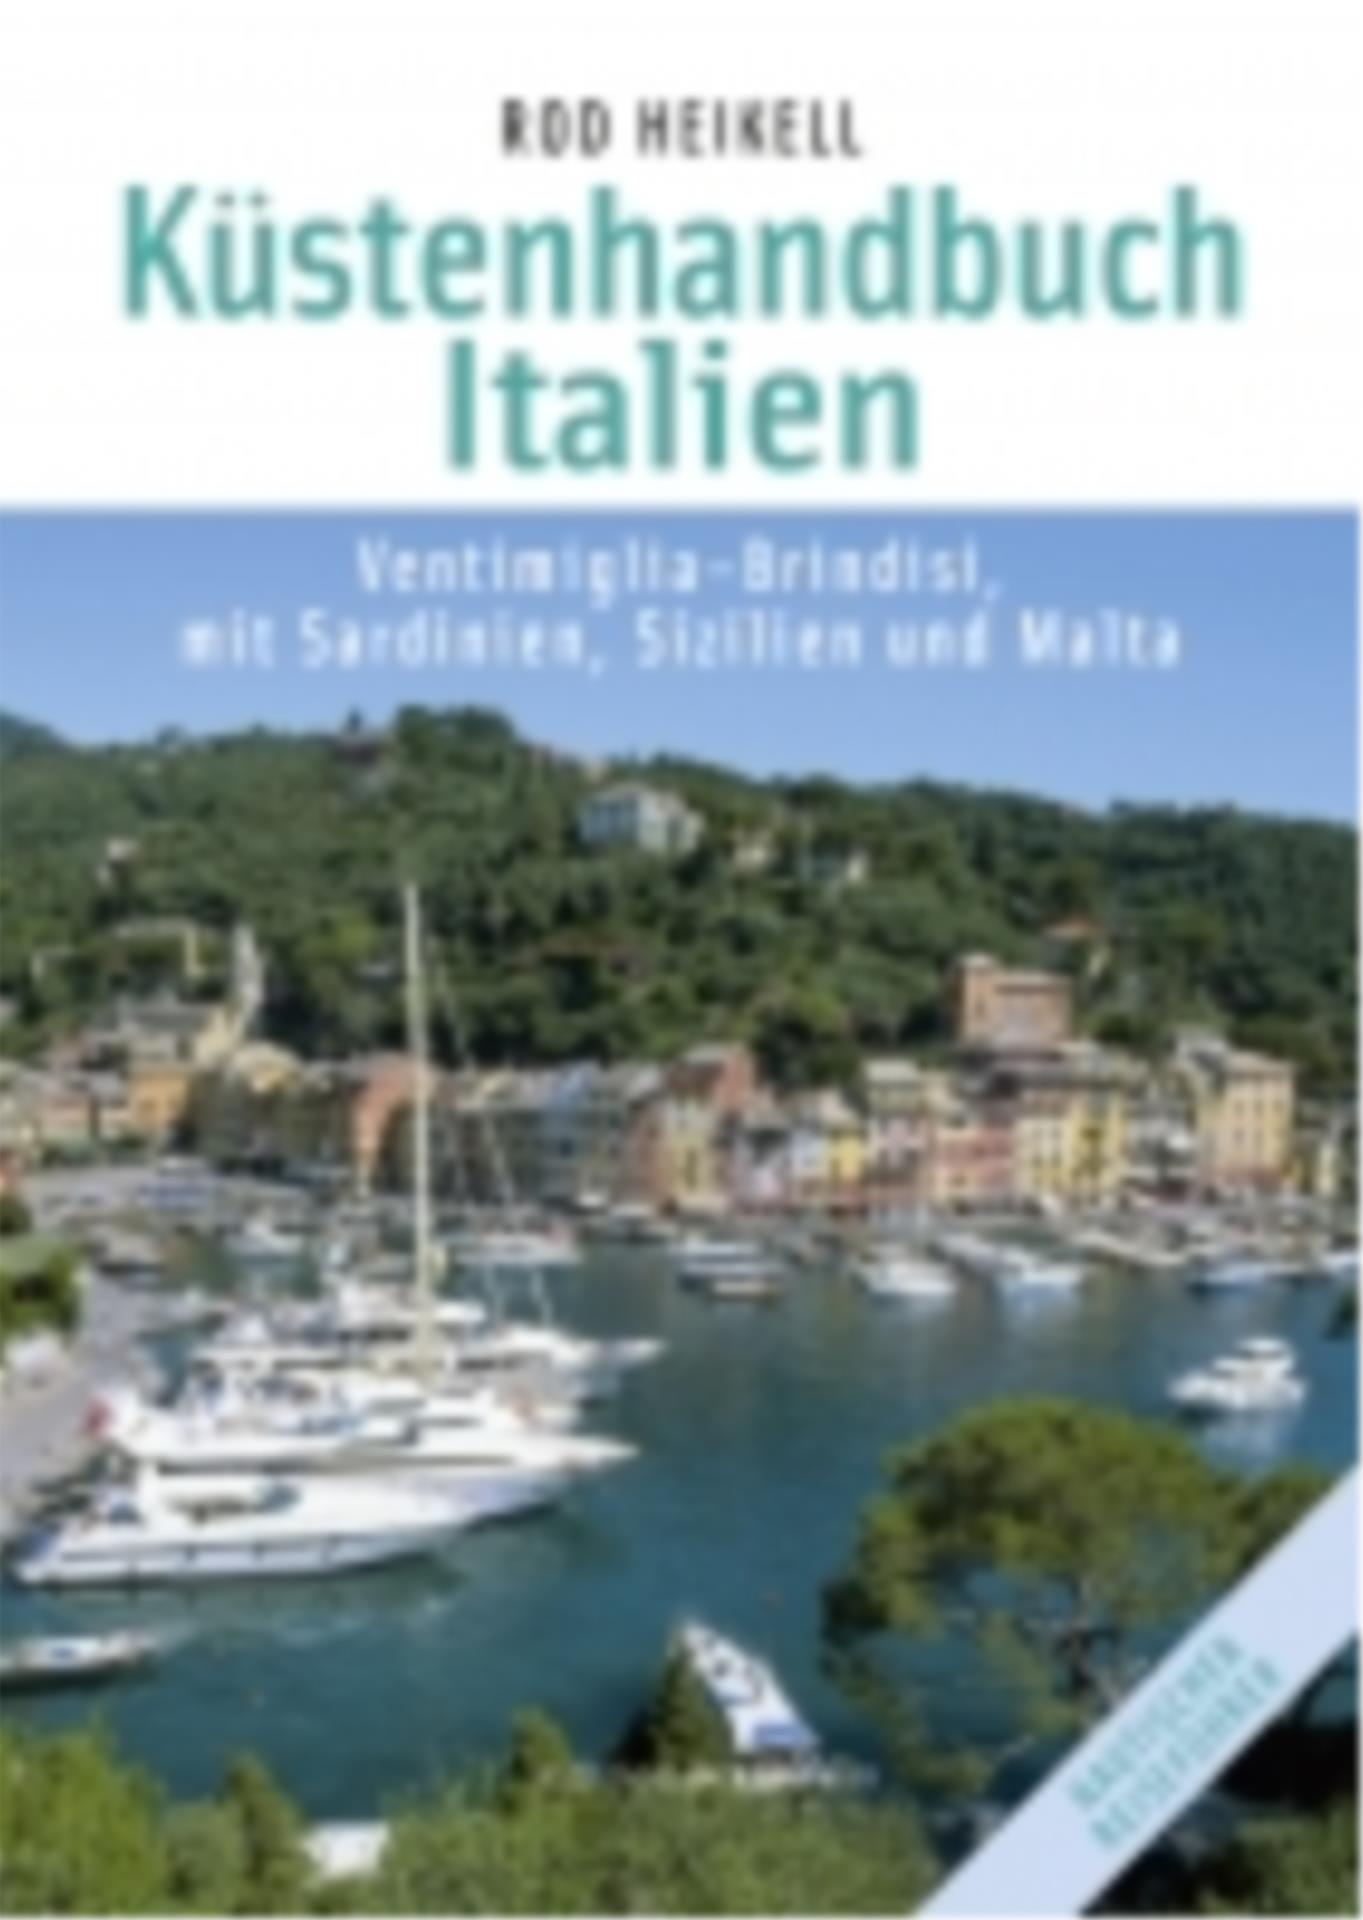 Küstenhandbuch Italien /Ventimiglia - Brindisi